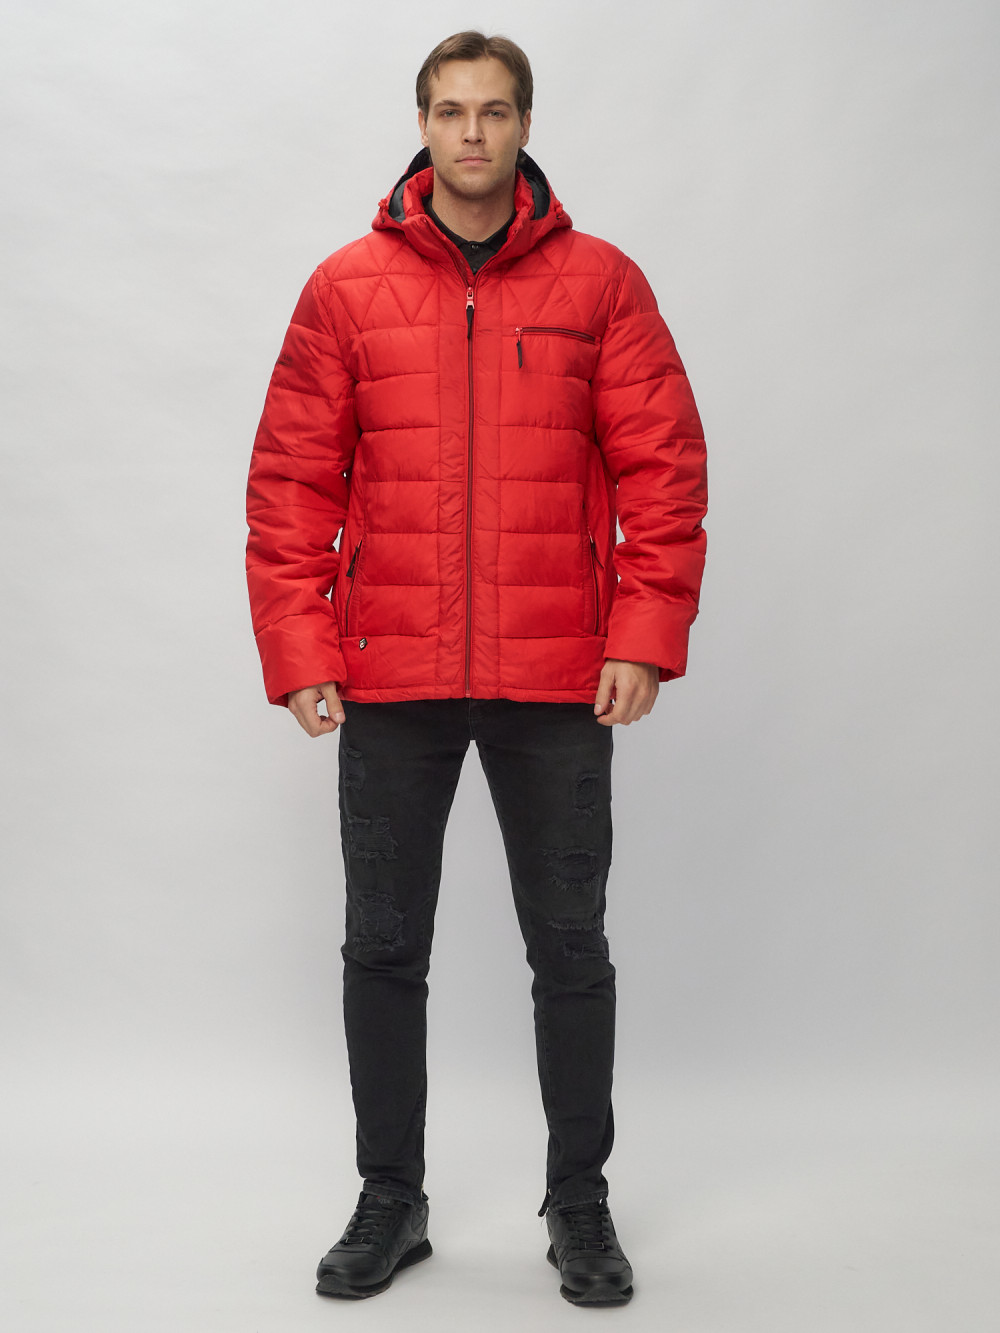 Купить оптом Куртка спортивная мужская с капюшоном красного цвета 62187Kr в Екатеринбурге